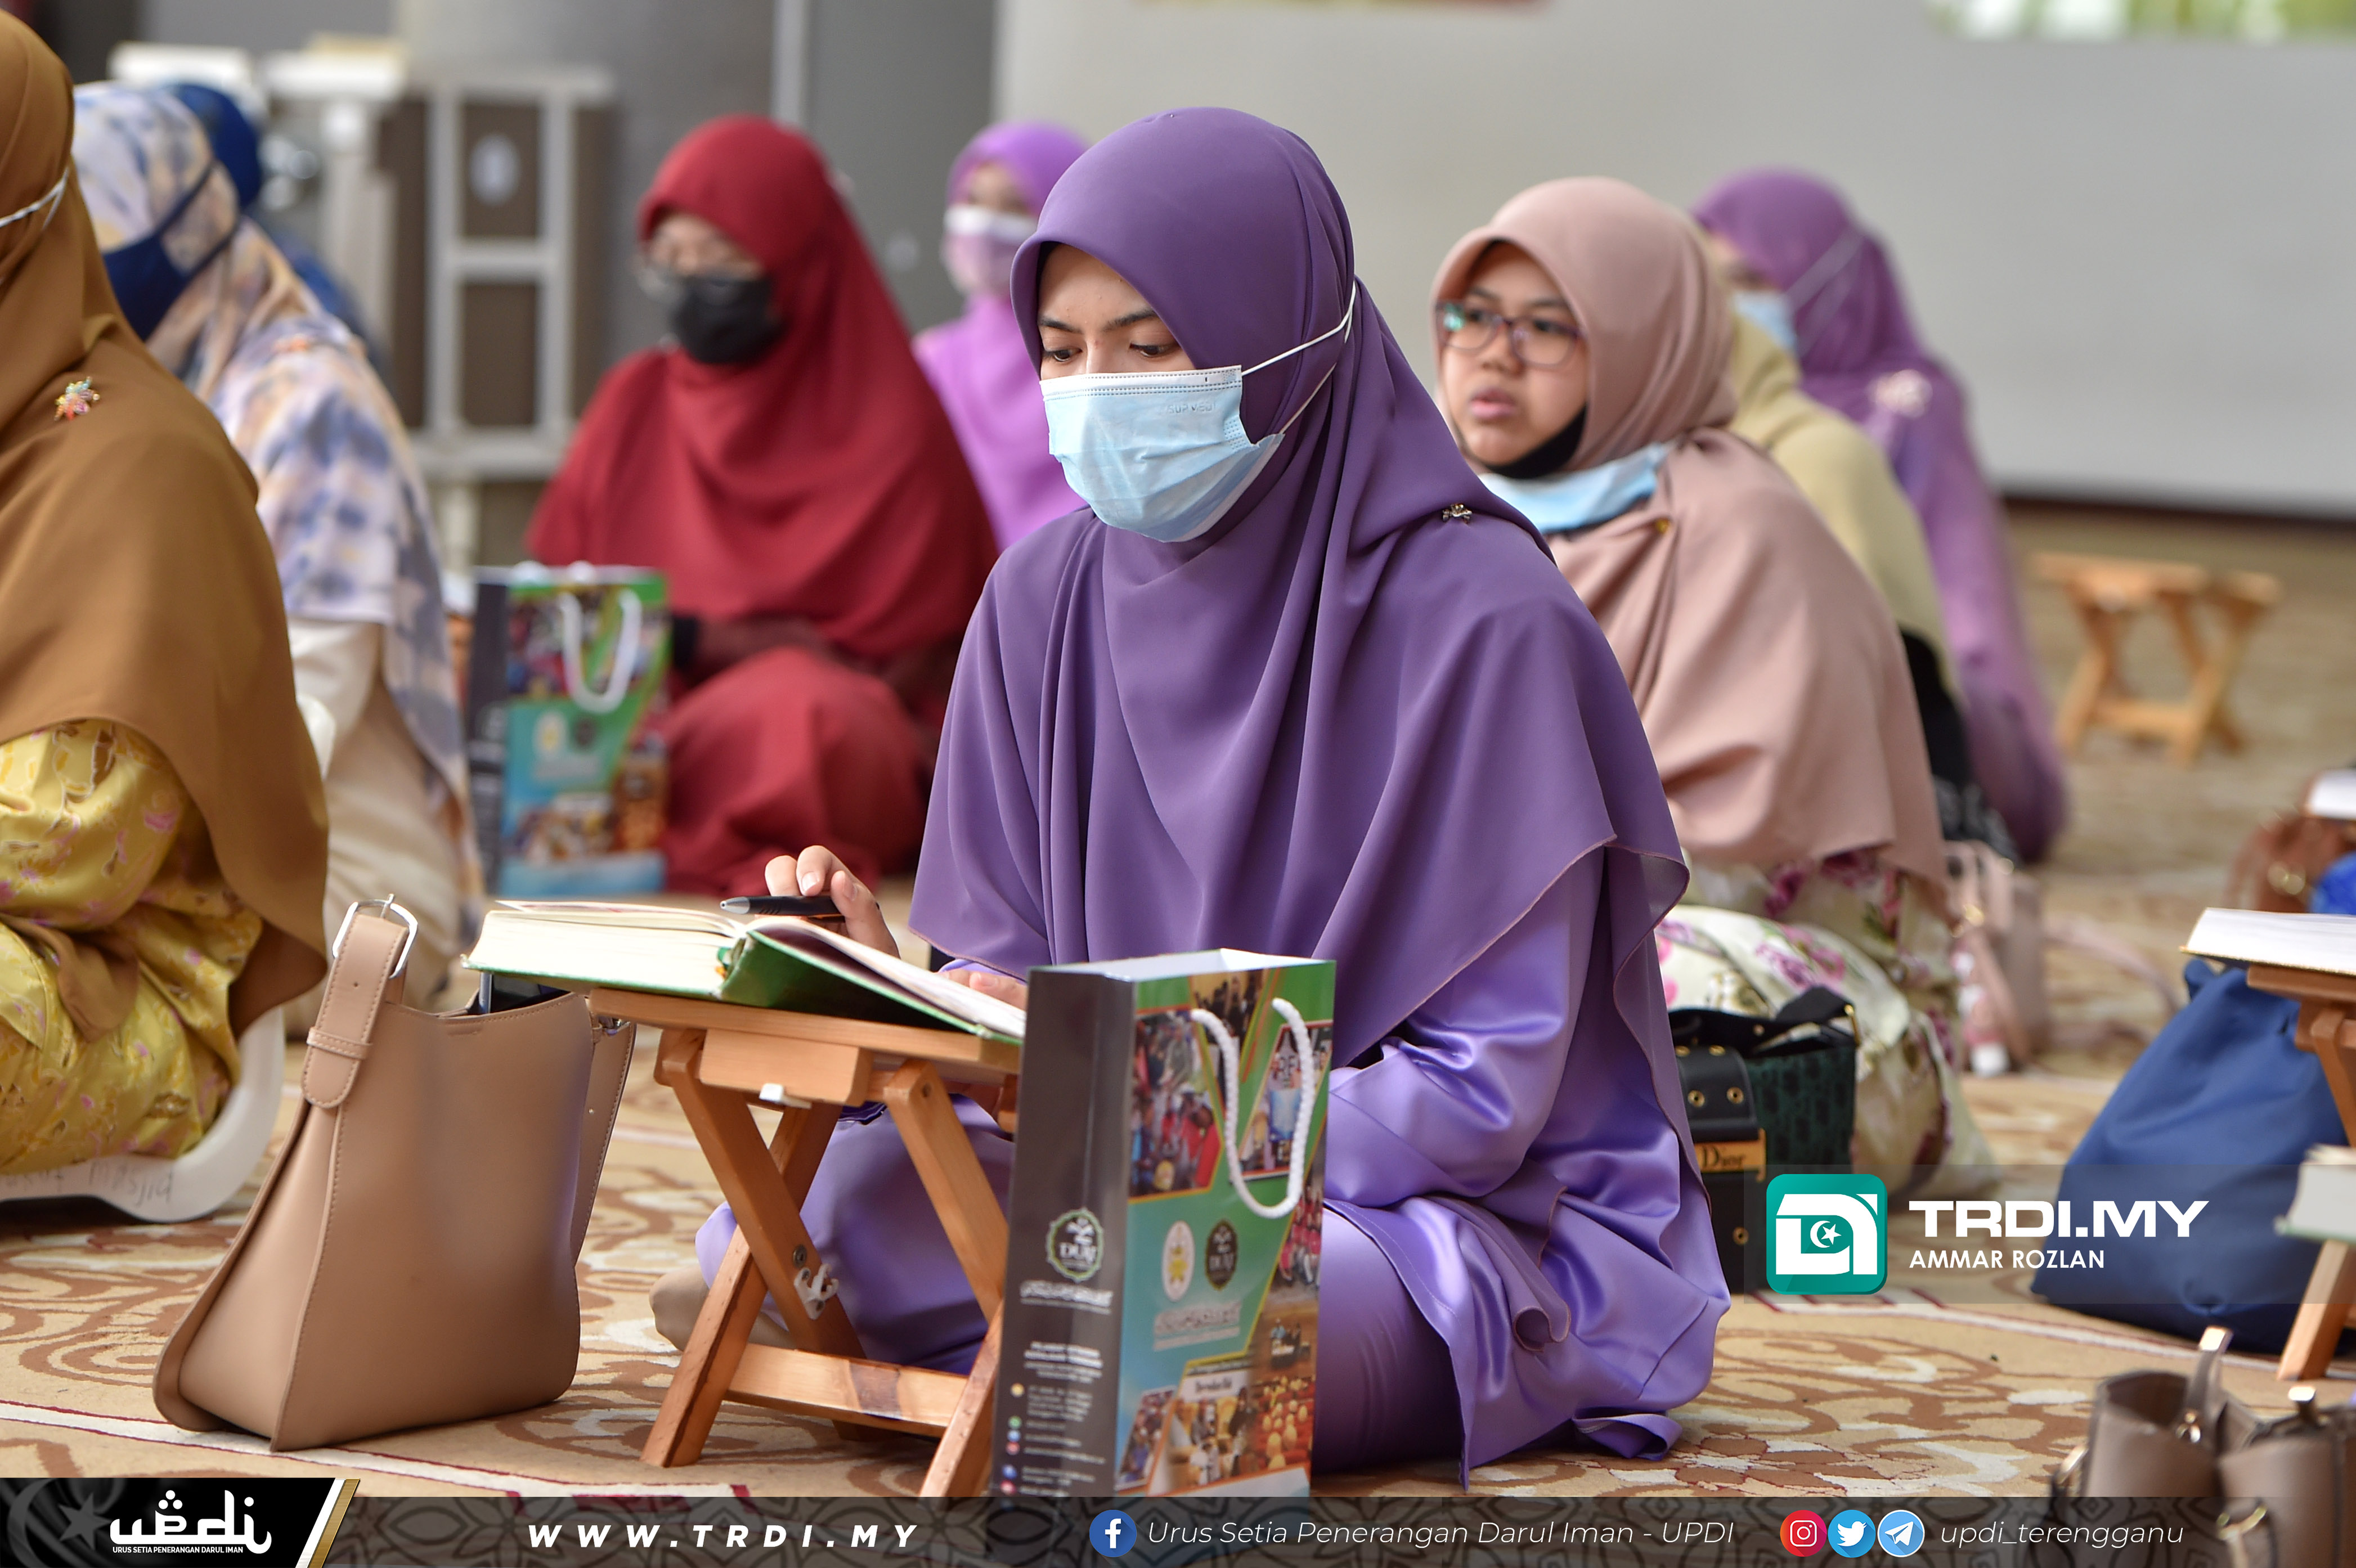 Program Terengganu Bertadarus Majlis Khatam Al-Quran Perdana Tahun 1442H/2021M anjuran Akademi Didik Ulama Amilin Terengganu (DUAT) di Masjid At-Taqwa Durian Burung, Kuala Terengganu.